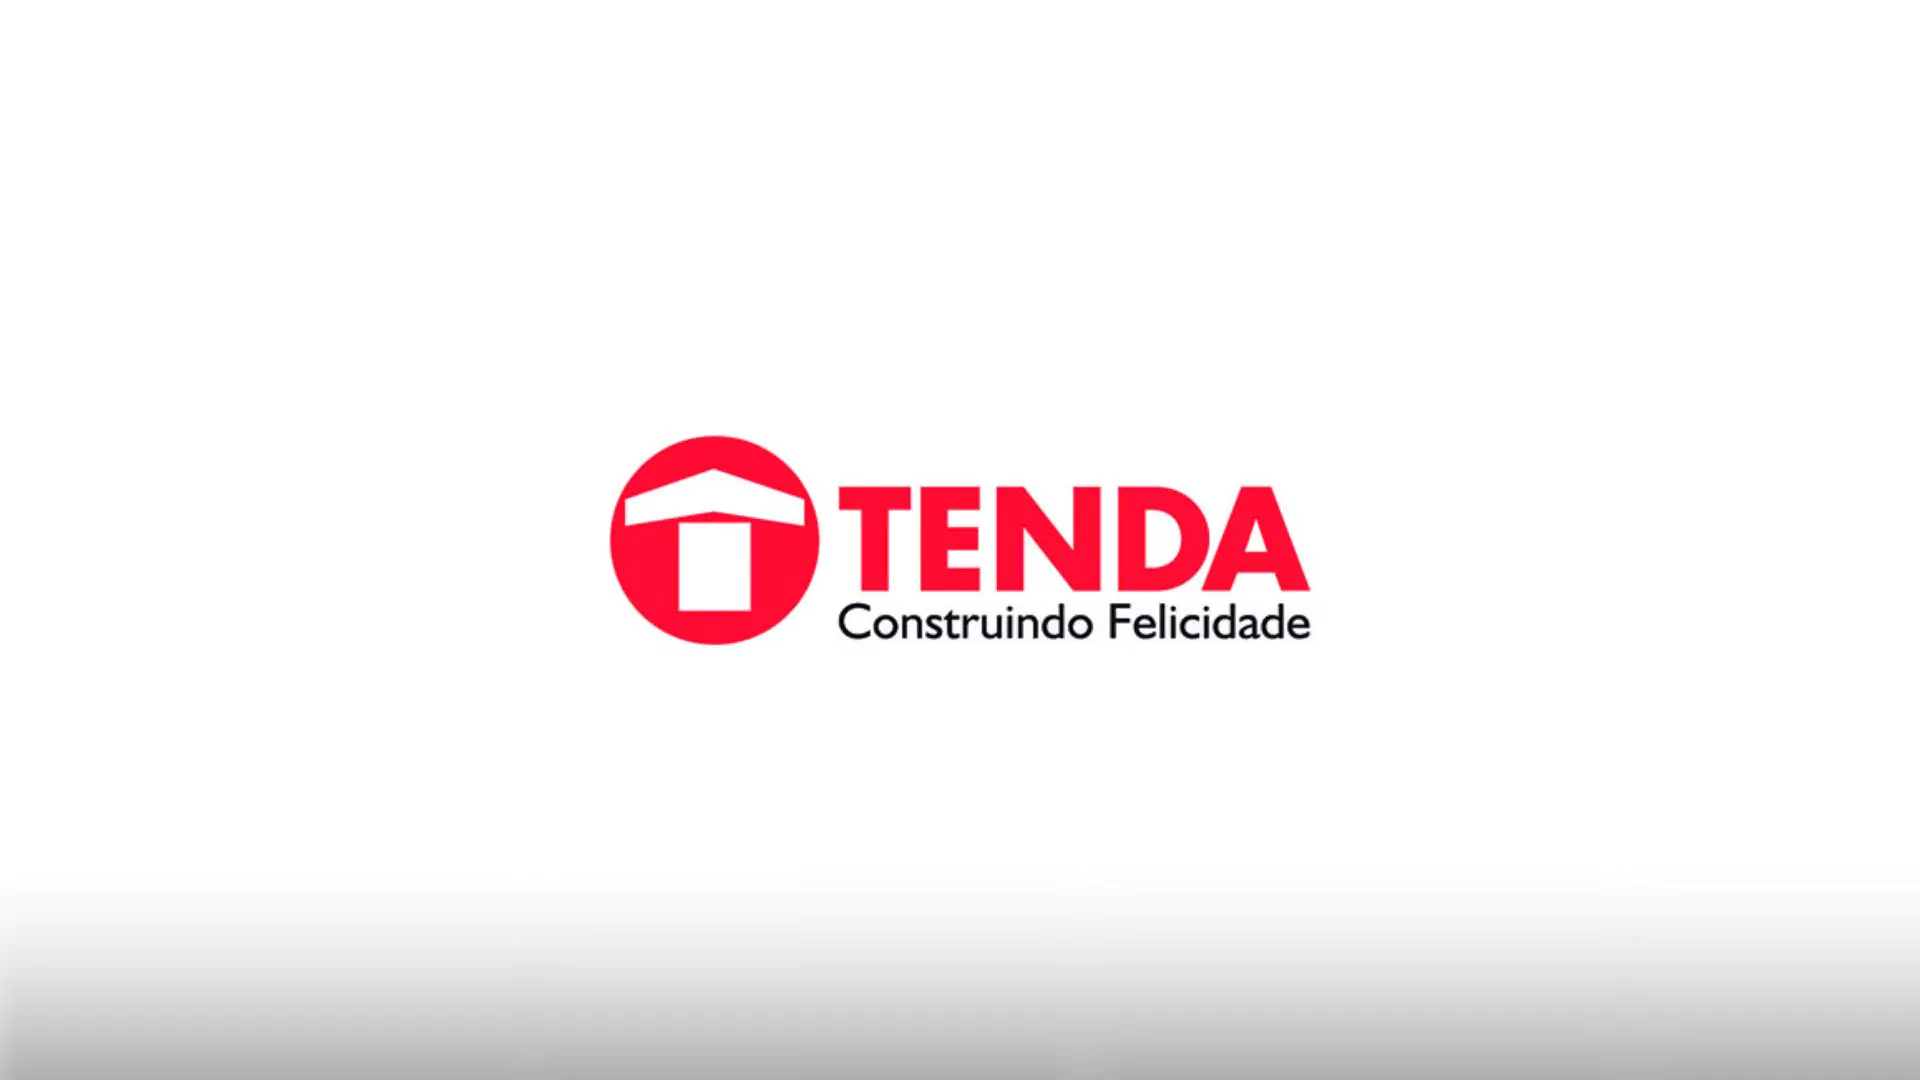 ANALISTA ADMINISTRATIVO JR: Tenda Abriu Vaga com Home Office 2x na Semana